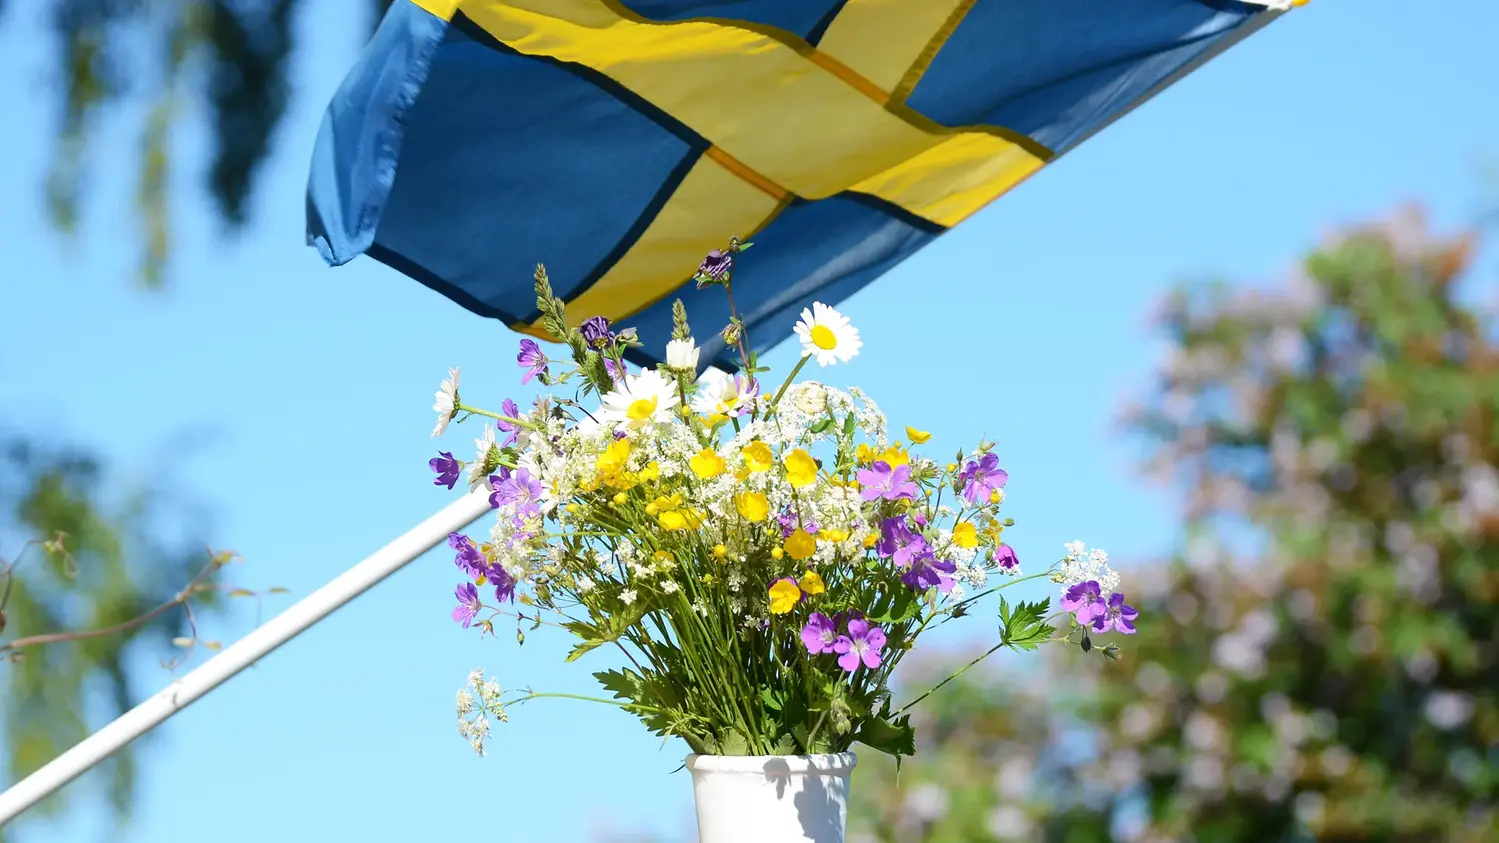 Svenska flaggan vajar i vinden mot en blå himmel och en blombukett i en vit vas.